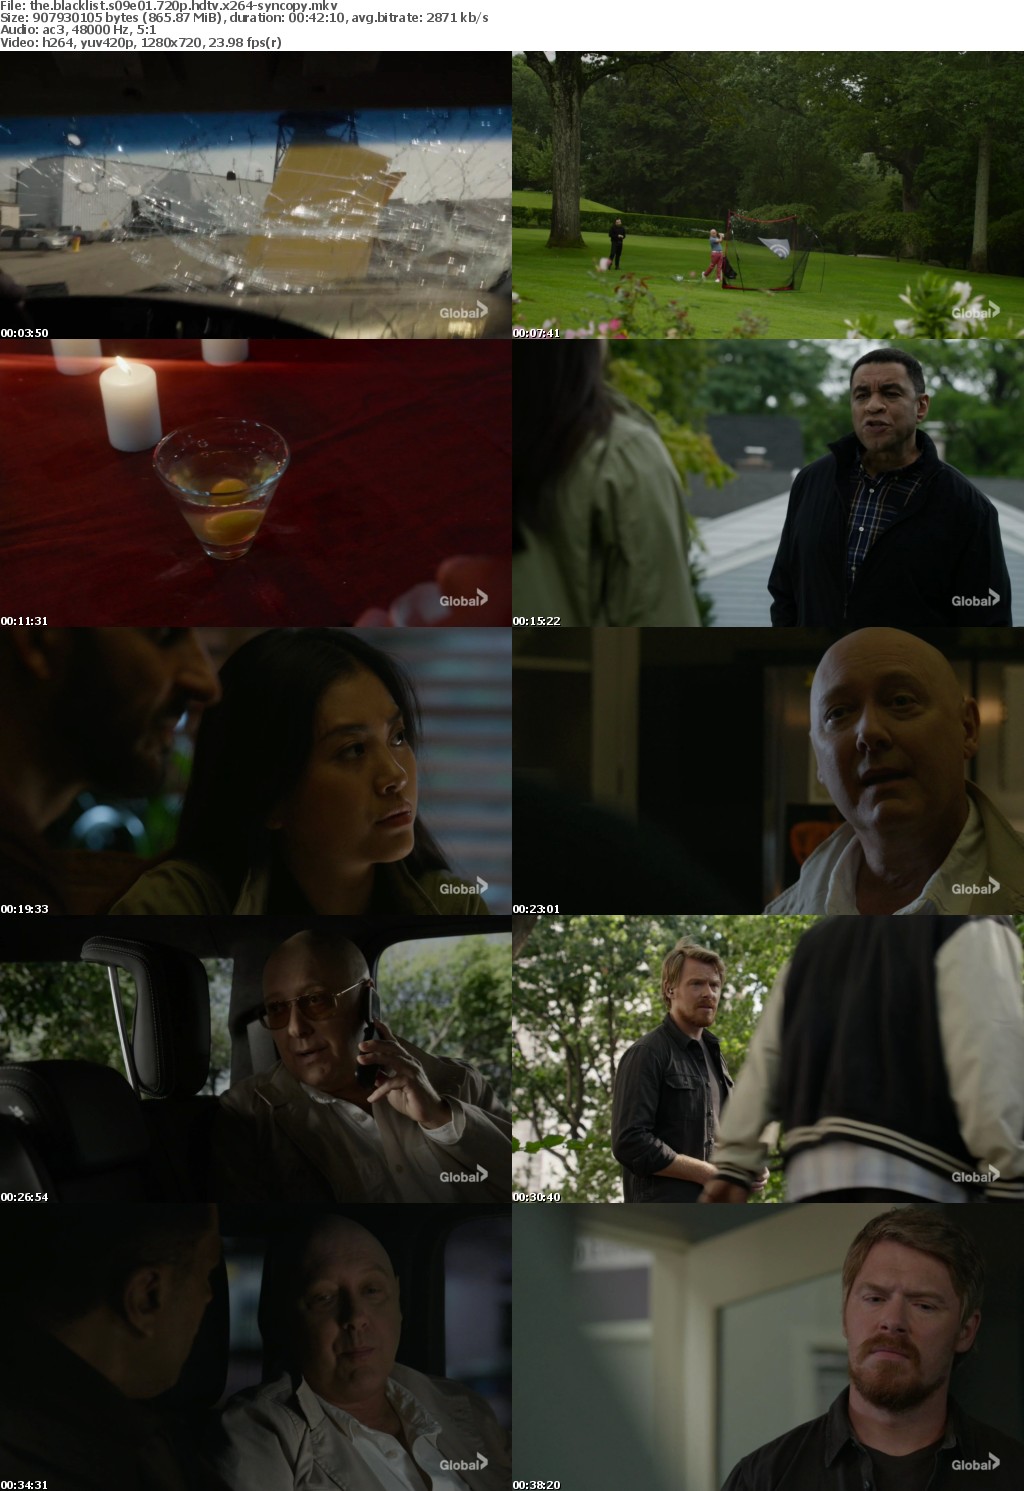 The Blacklist S09E01 720p HDTV x264-SYNCOPY